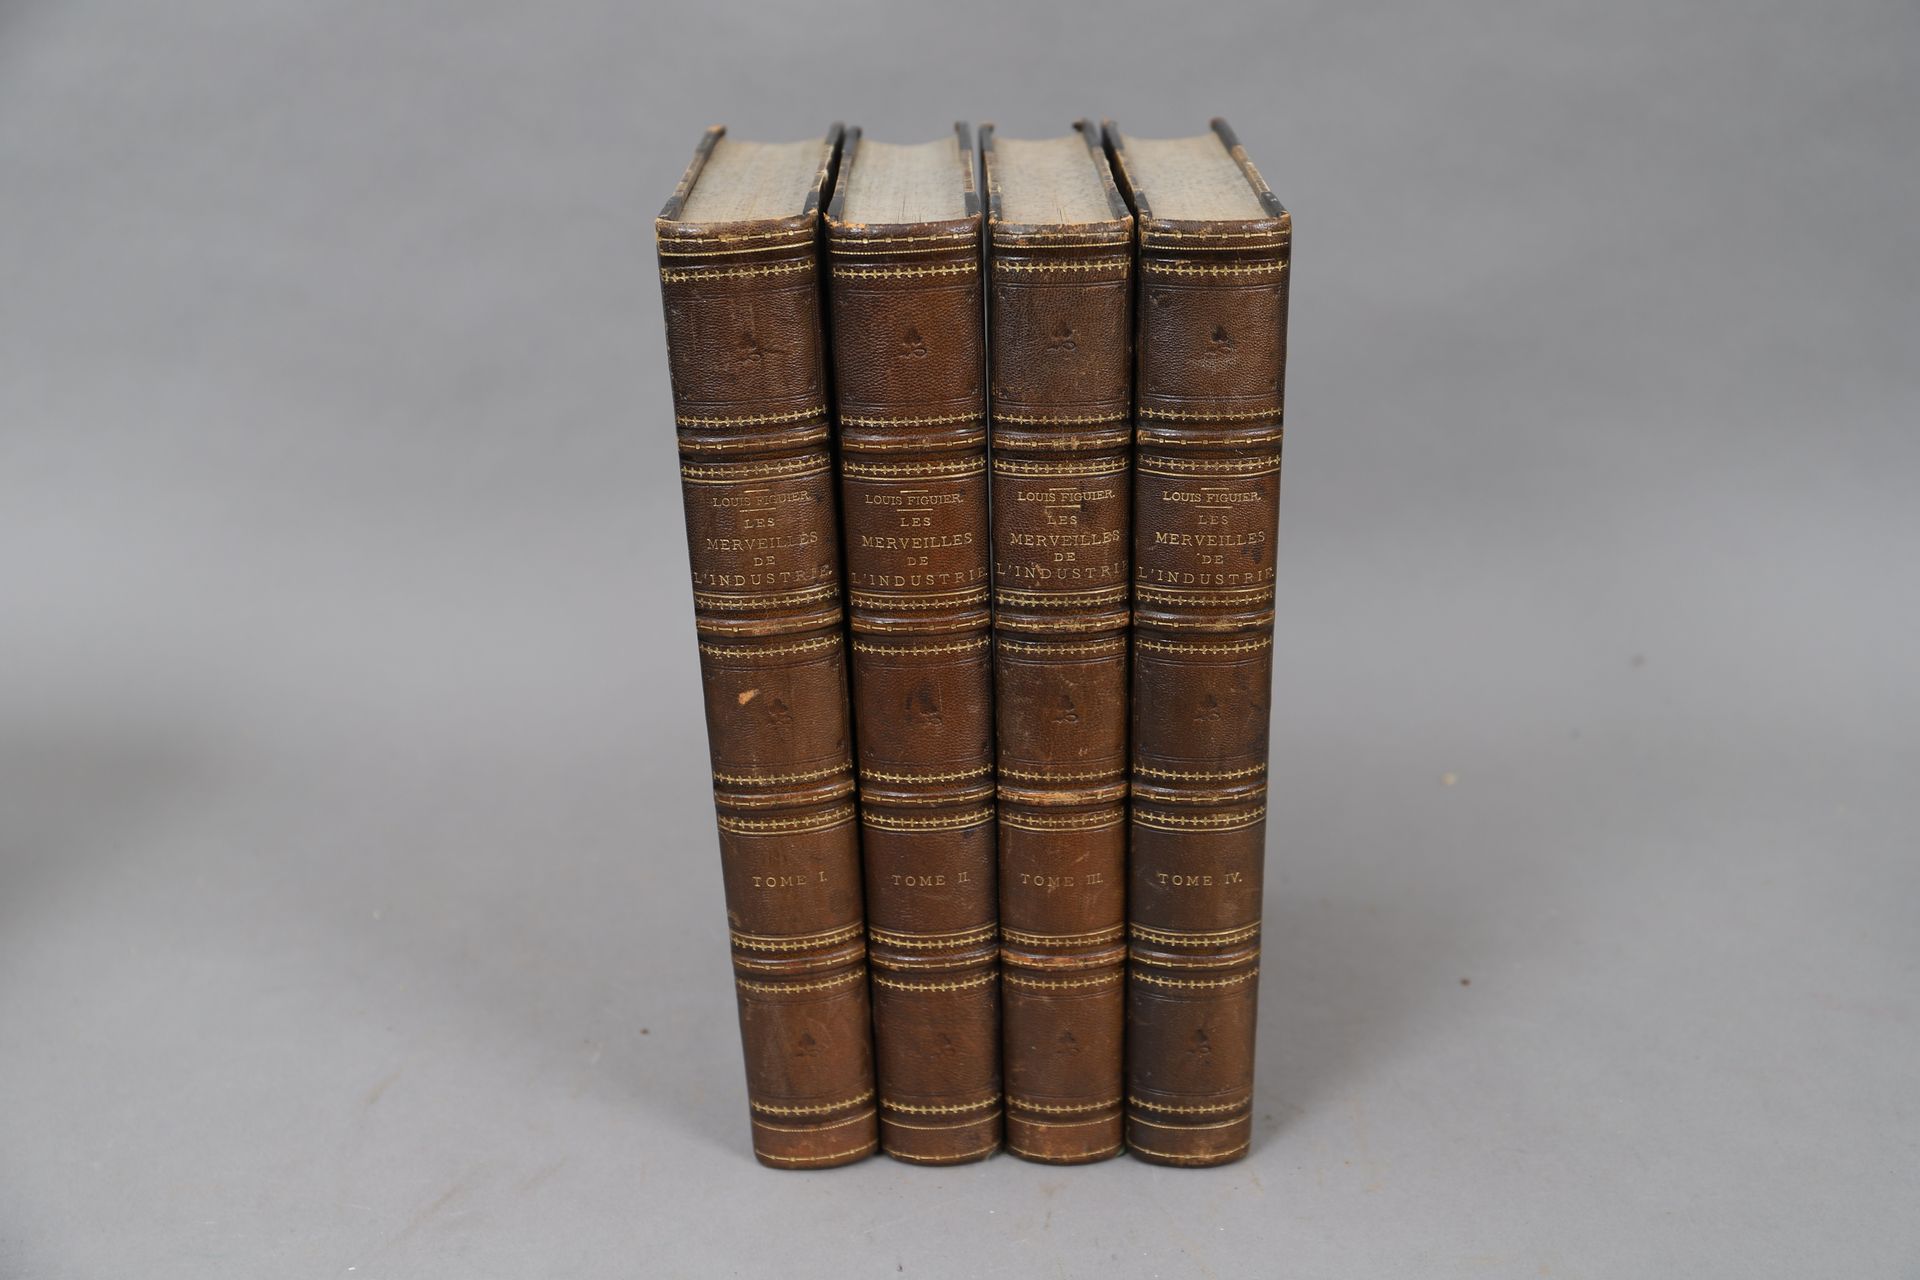 Null FIGUIER - DIE WUNDER DER INDUSTRIE.

4 gebundene Bände. (1873-1876).